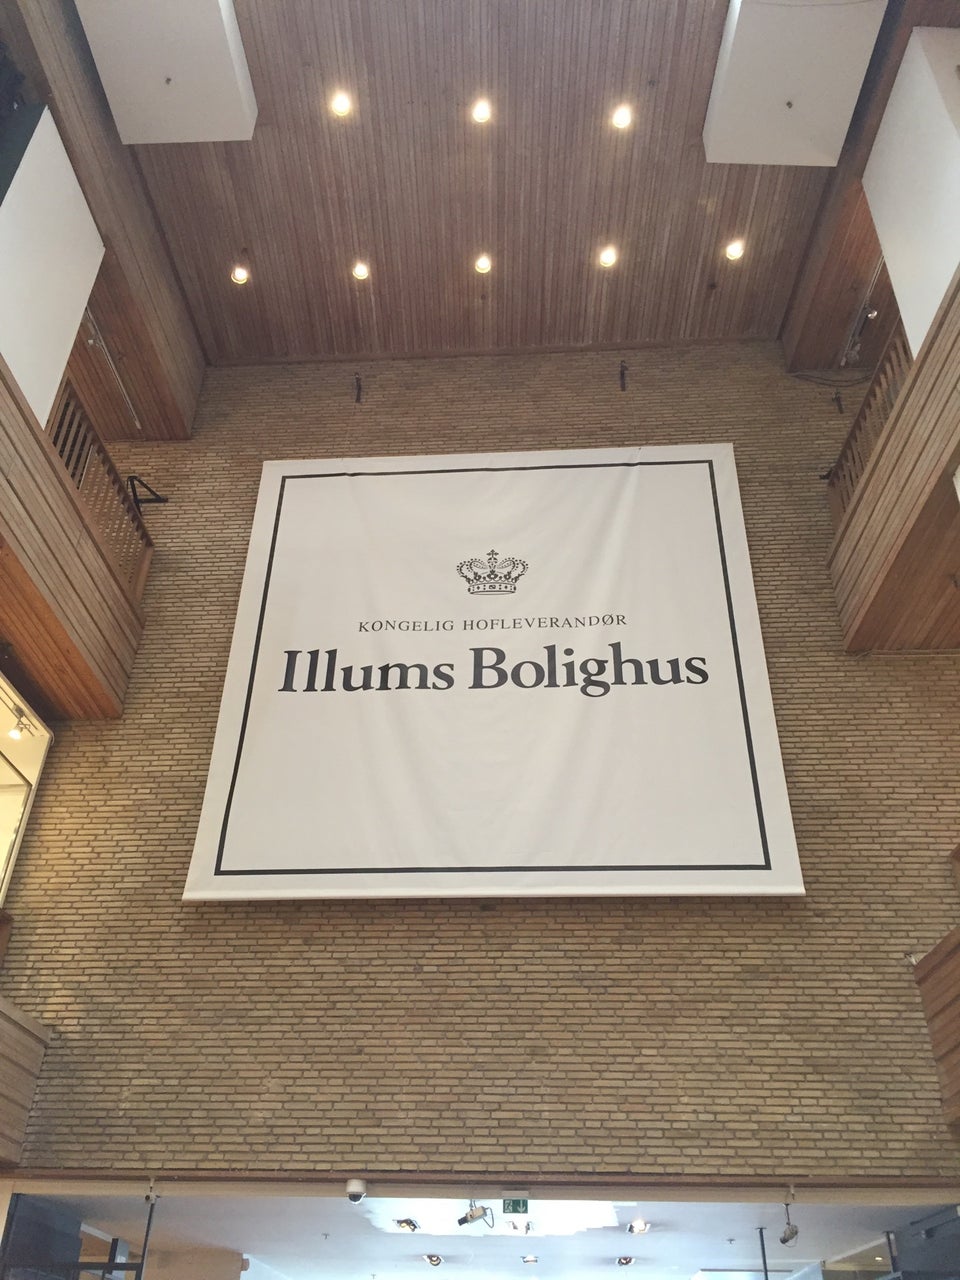 Illums Bolighus - Picture of Illums Bolighus, Copenhagen - Tripadvisor